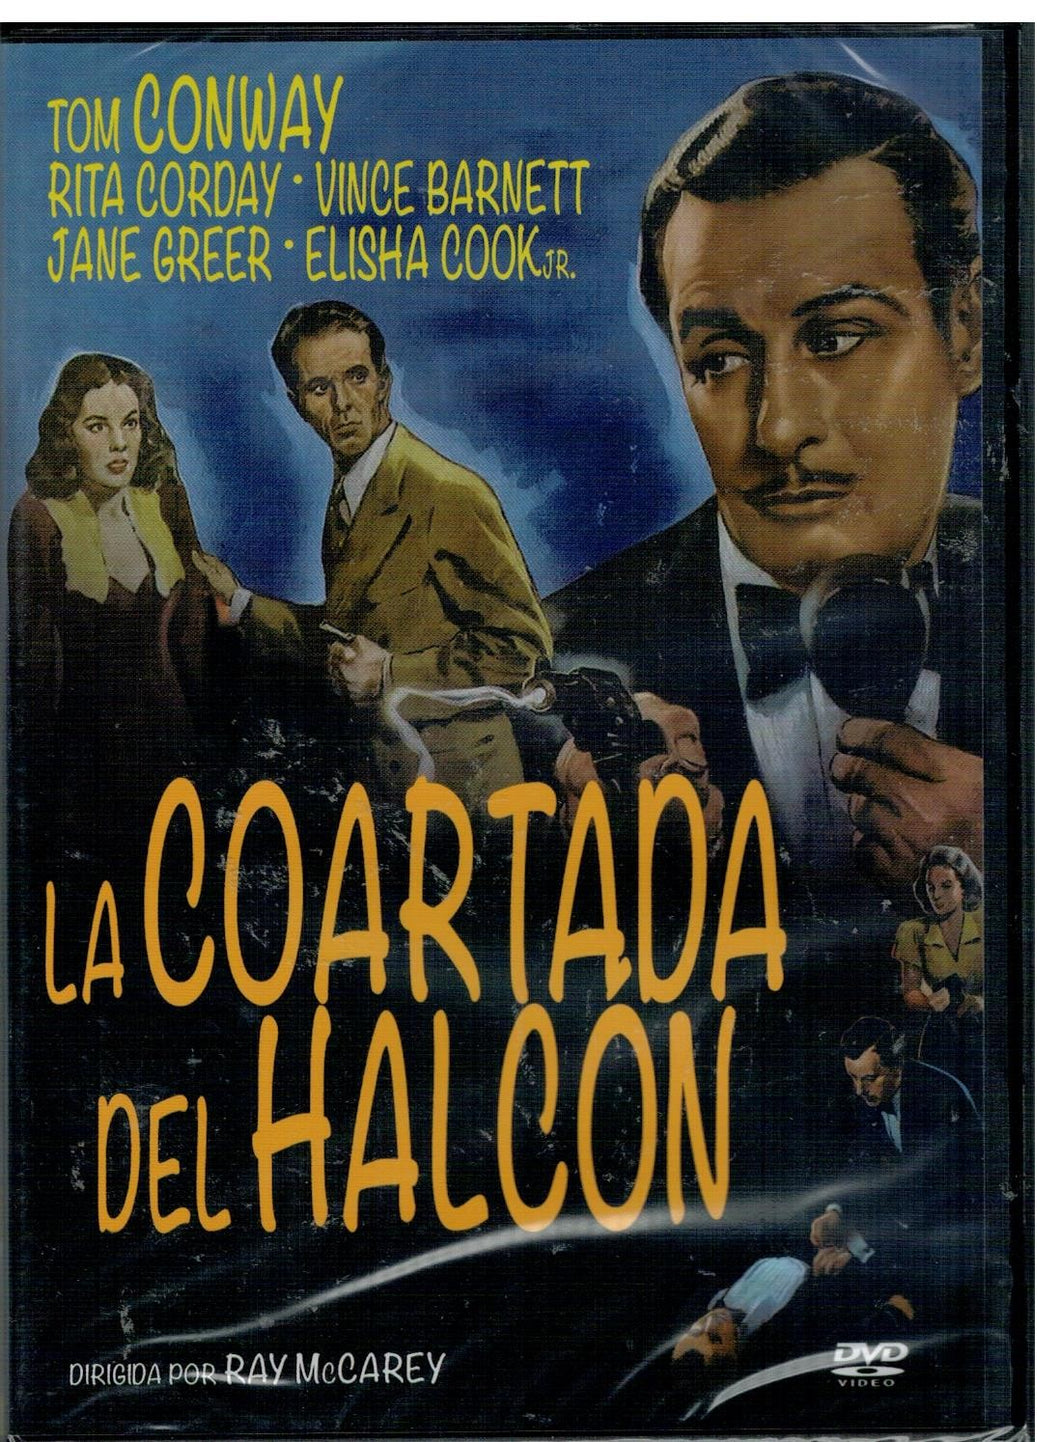 La coartada del Halcón (The Falcon's Alibi)  (DVD Nuevo)